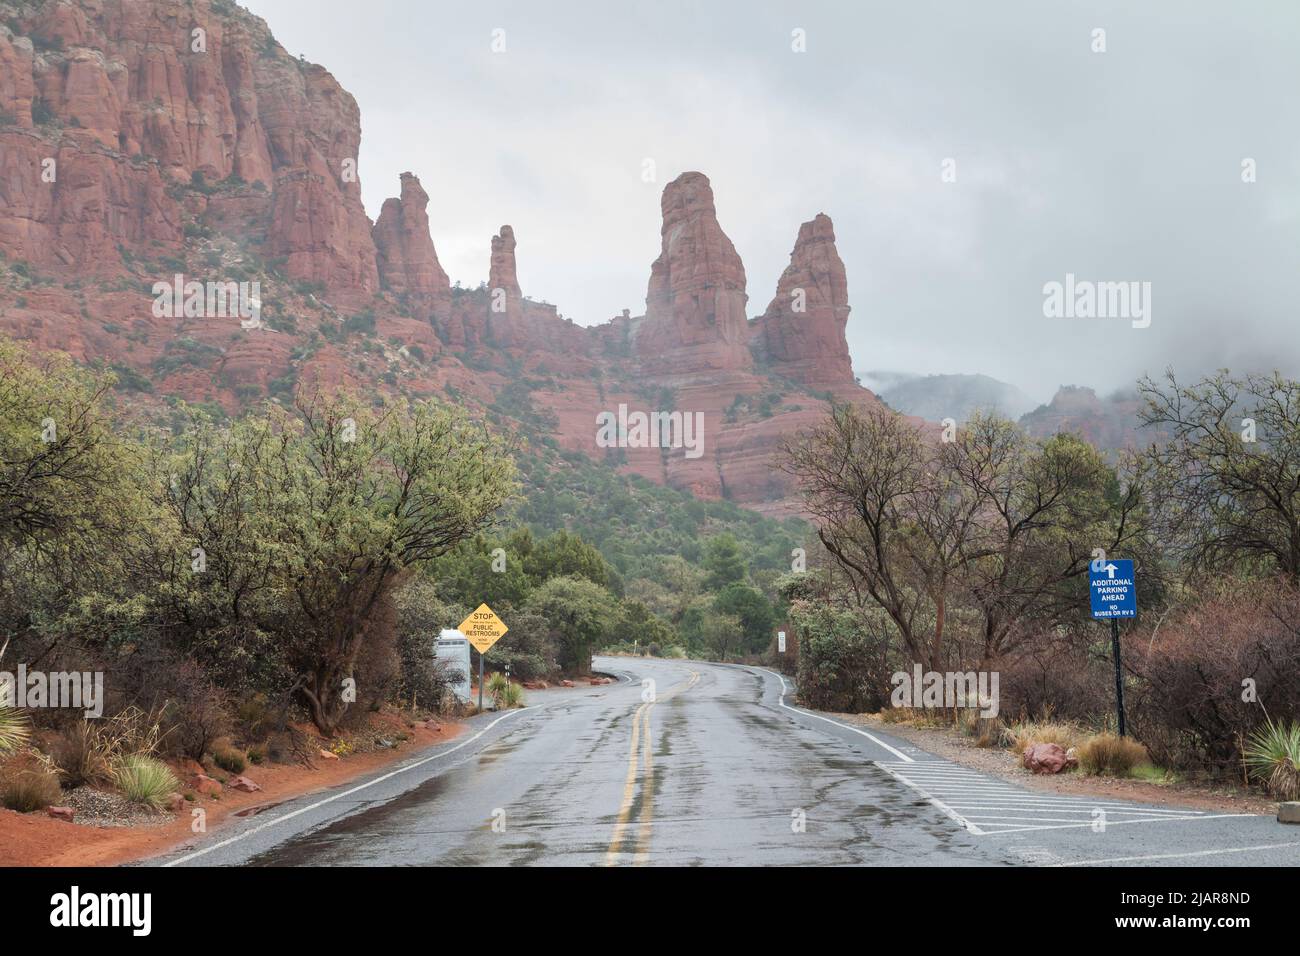 Scenic route to Chapel of the Holy Cross, Sedona, Arizona, USA Stock Photo